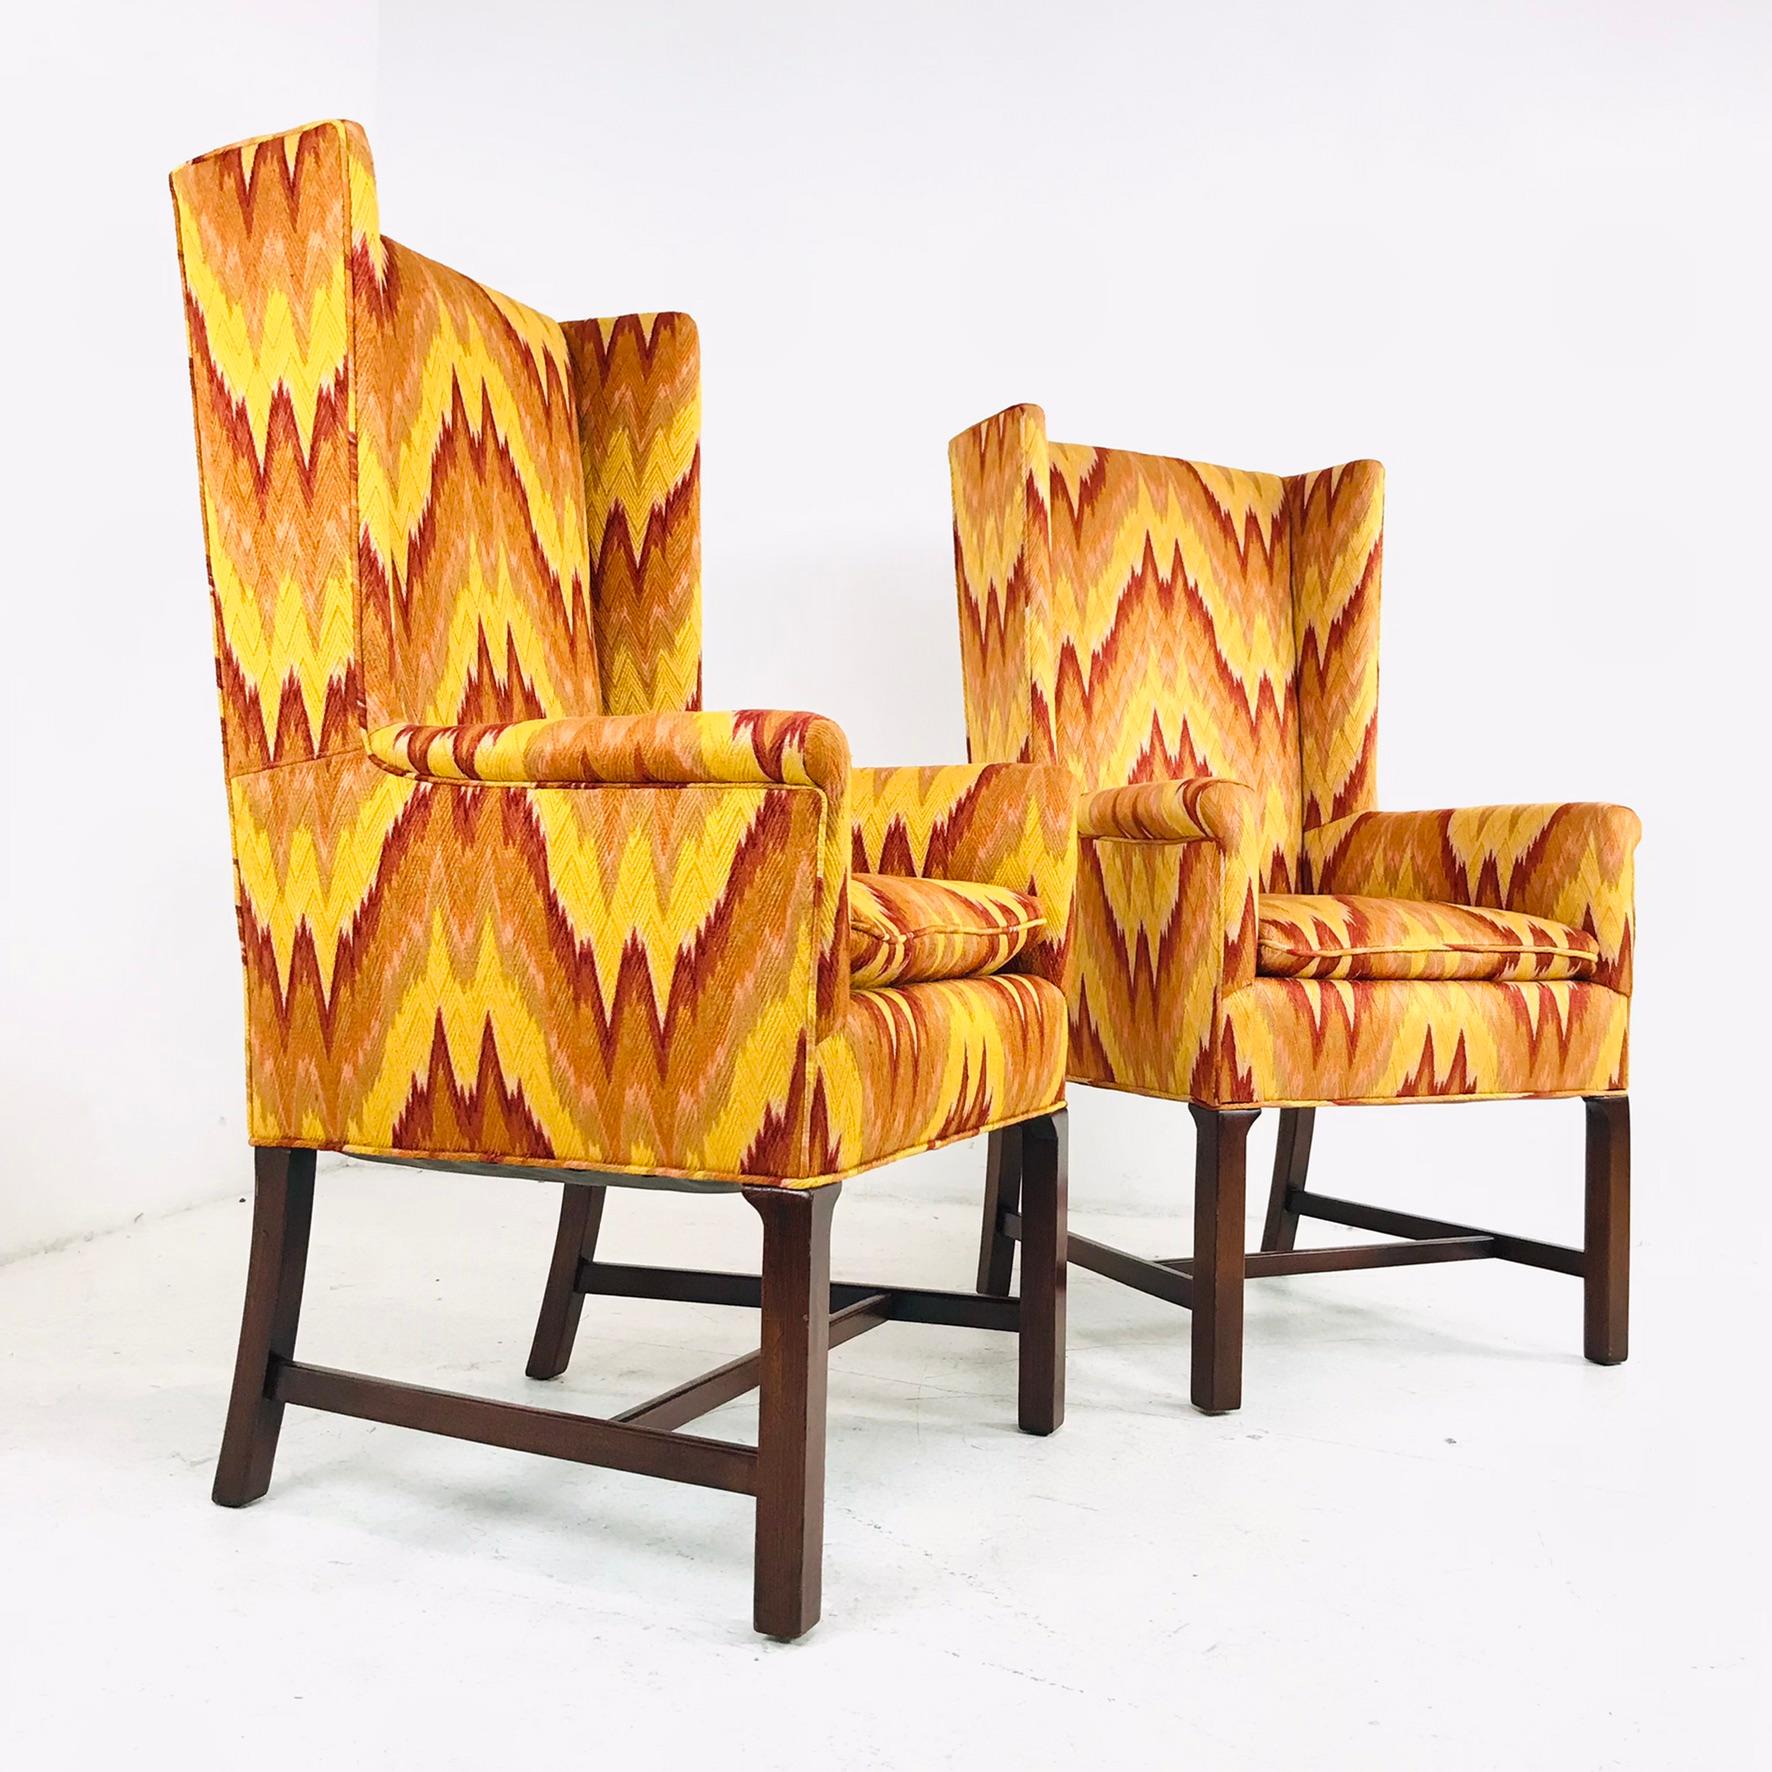 Erstaunliches Paar! Diese Stühle mit hoher Rückenlehne sind mit einem auffälligen orange-roten Flammenstich versehen. Daunengefüllte Sitzkissen - die Polsterung ist tadellos!